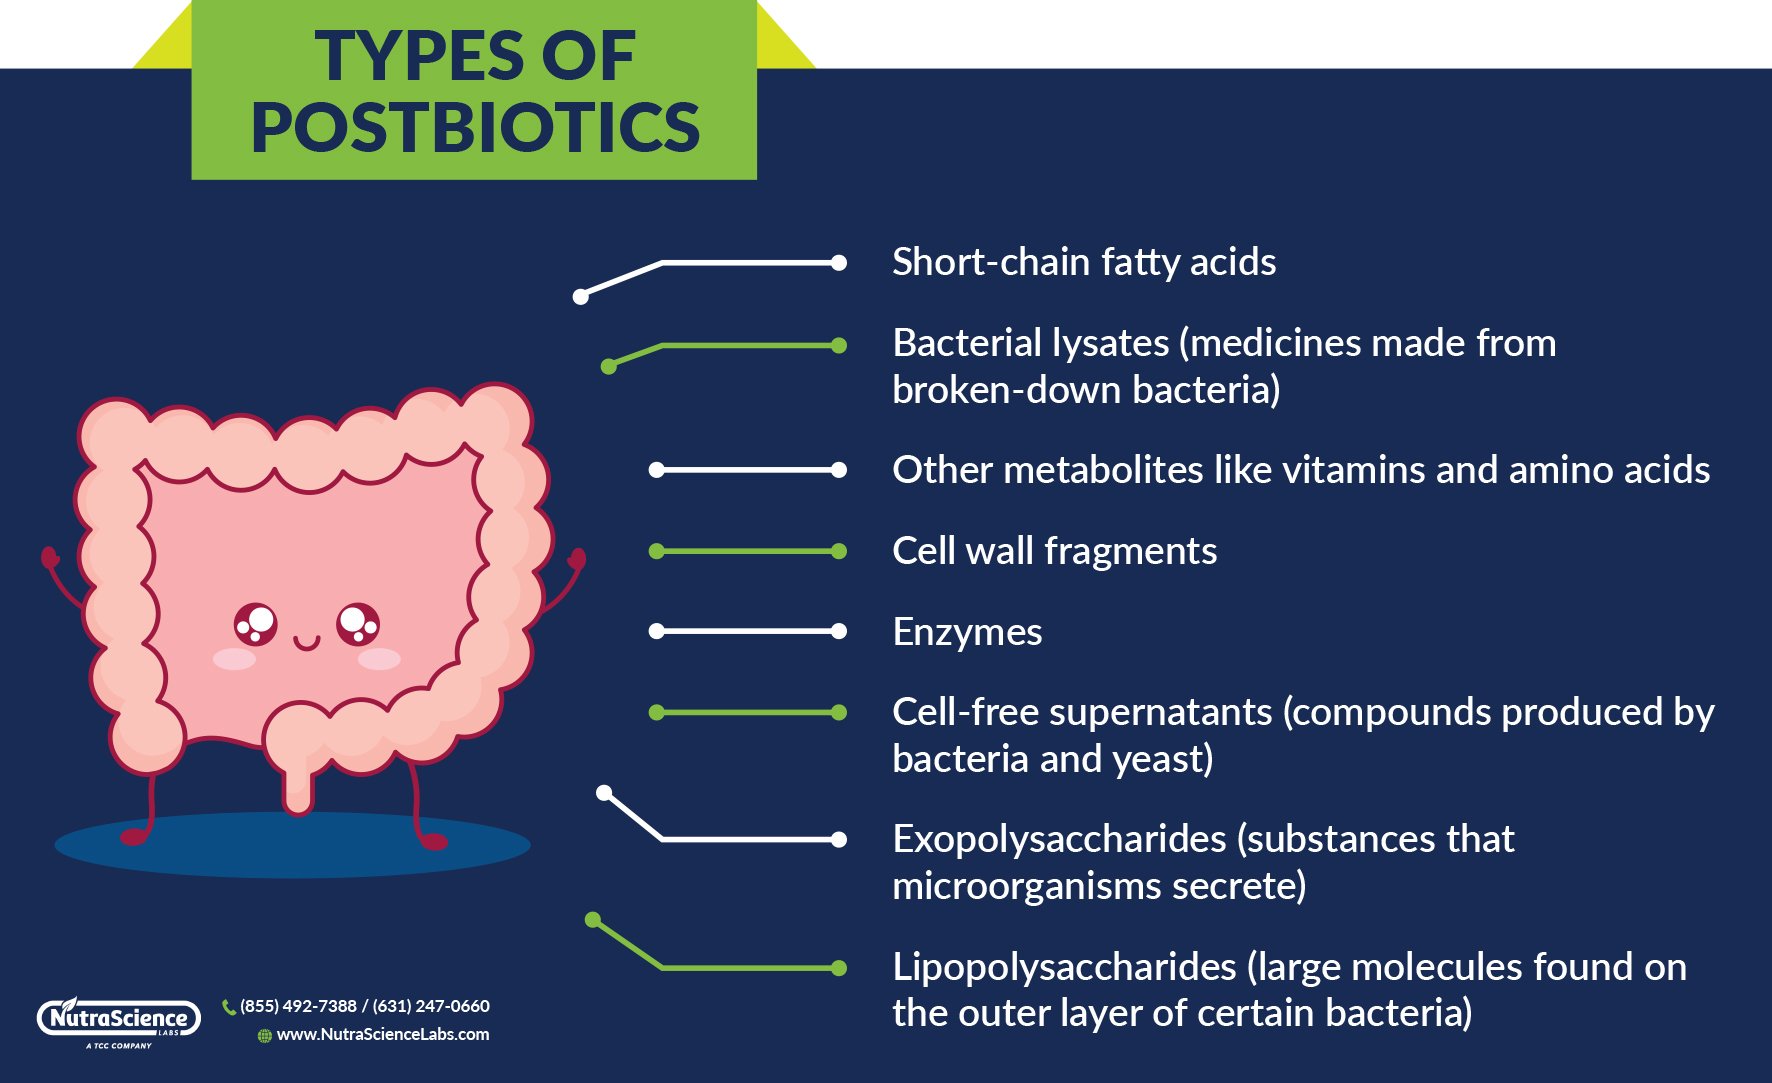 Types of Postbiotics